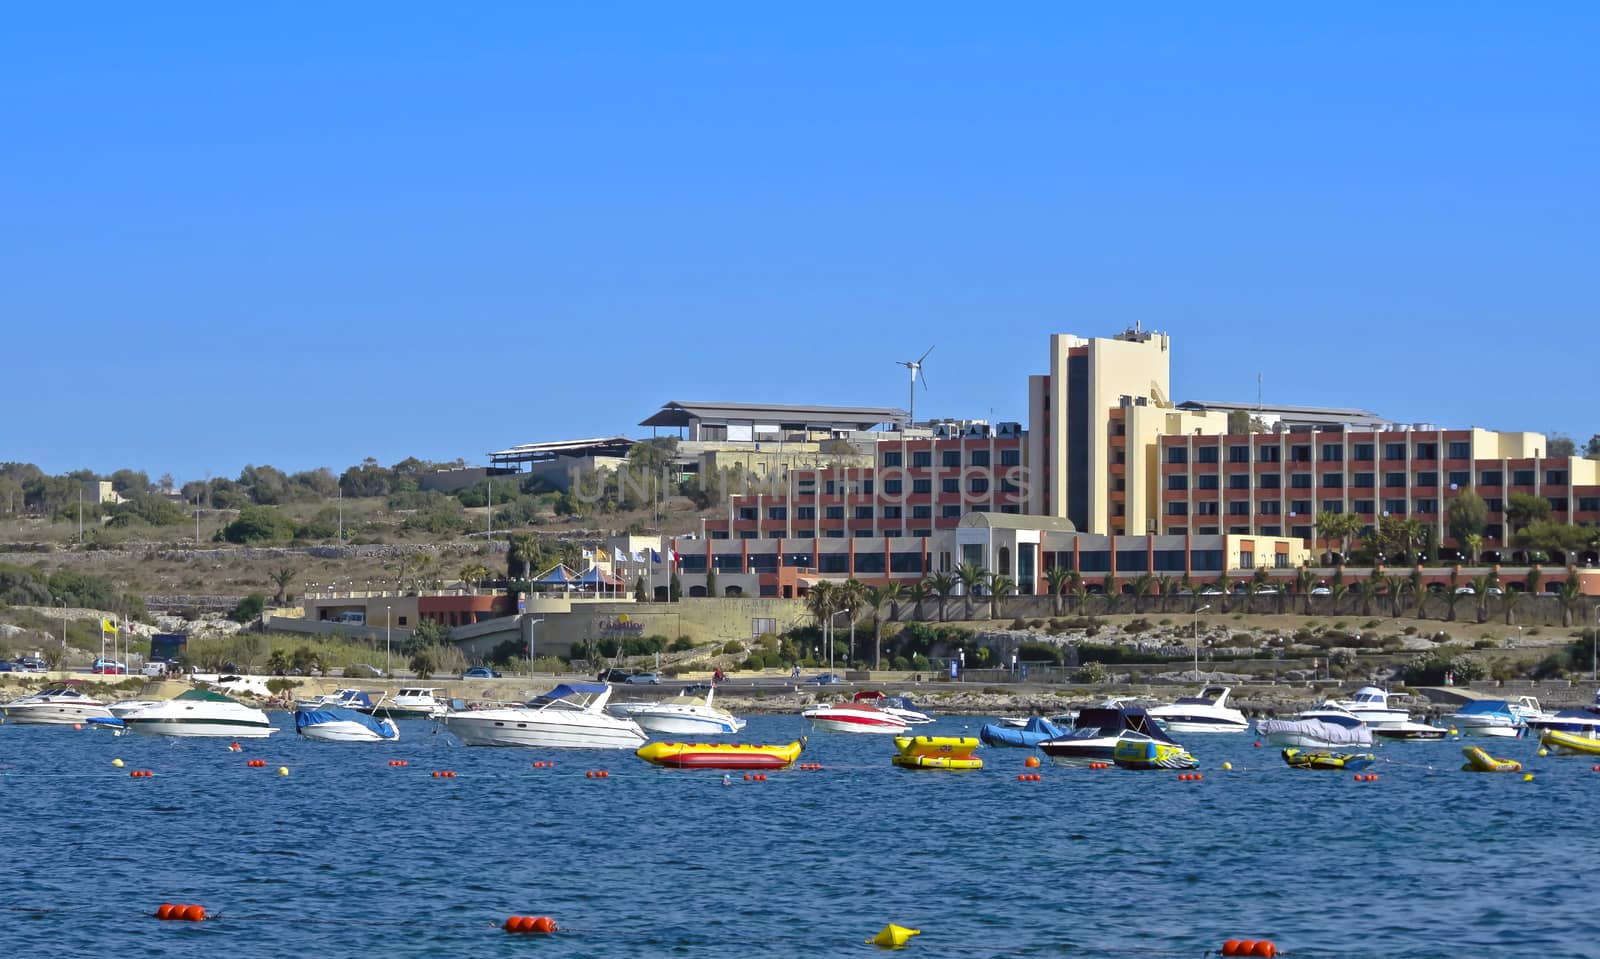 Maltese seaside view by dario